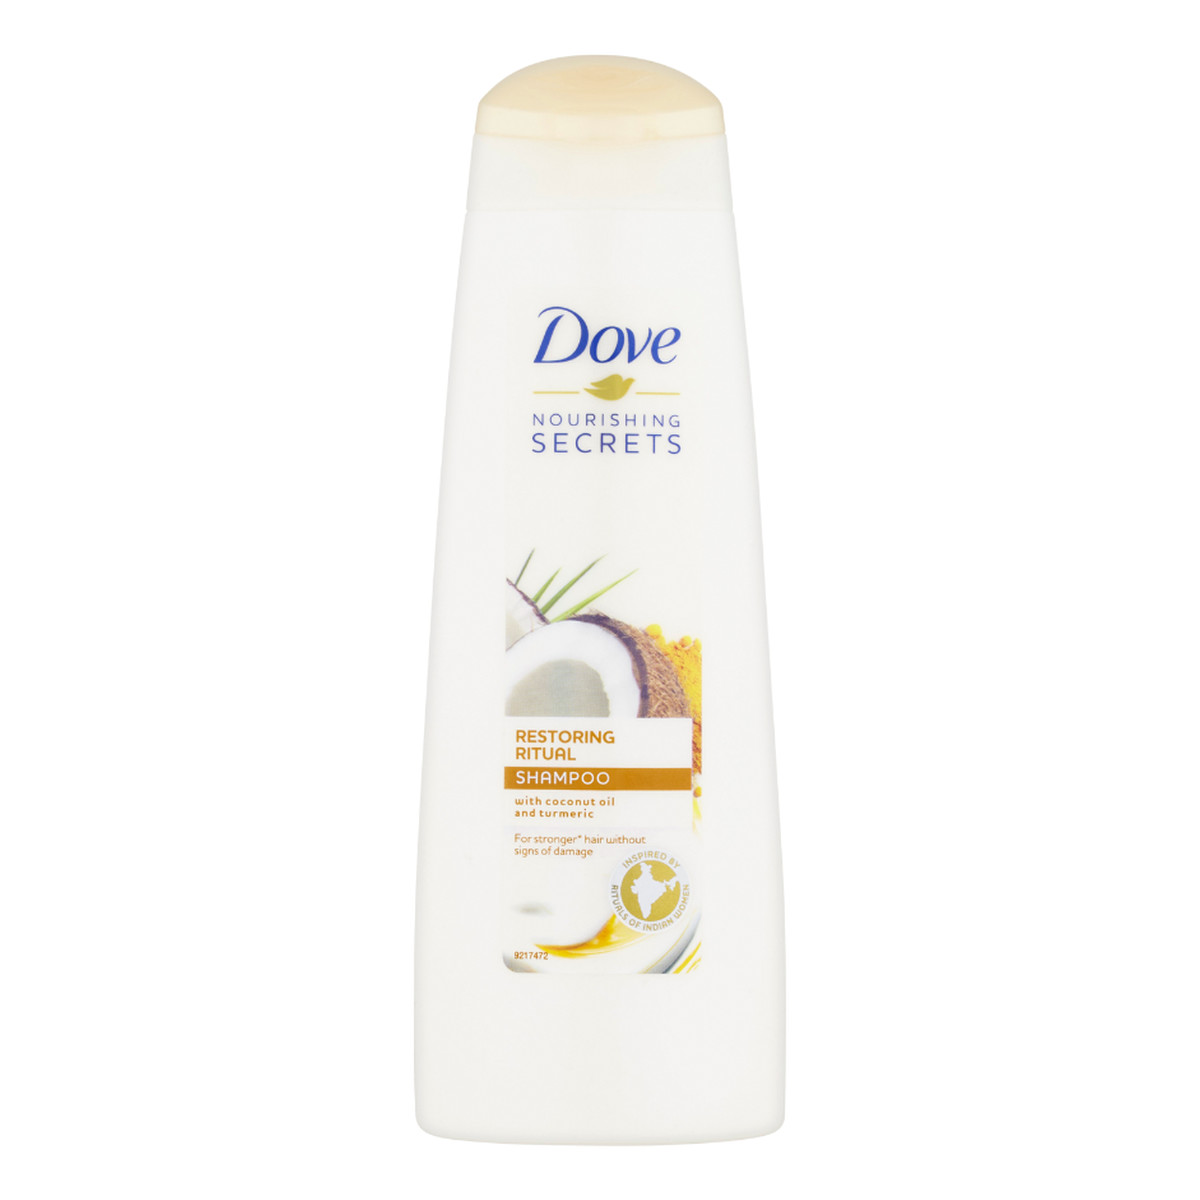 Dove Nourishing Secrets szampon do włosów zniszczonych Coconut Oil & Turmeric 250ml